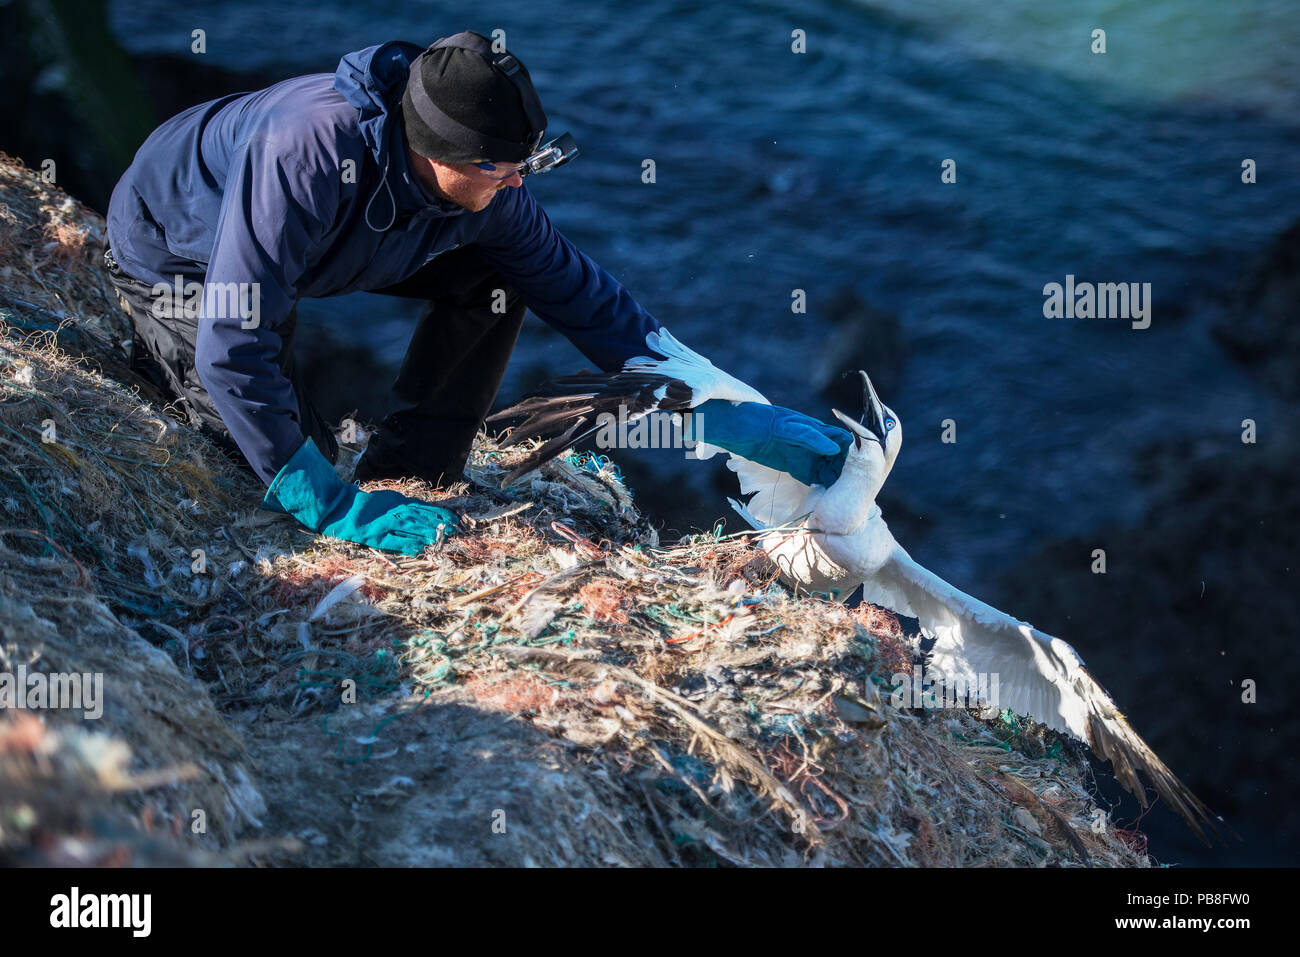 Libérer le scientifique fou de Bassan (Morus bassanus) empêtré dans les déchets marins. Grassholm Island, au Pays de Galles, Royaume-Uni. Octobre Banque D'Images